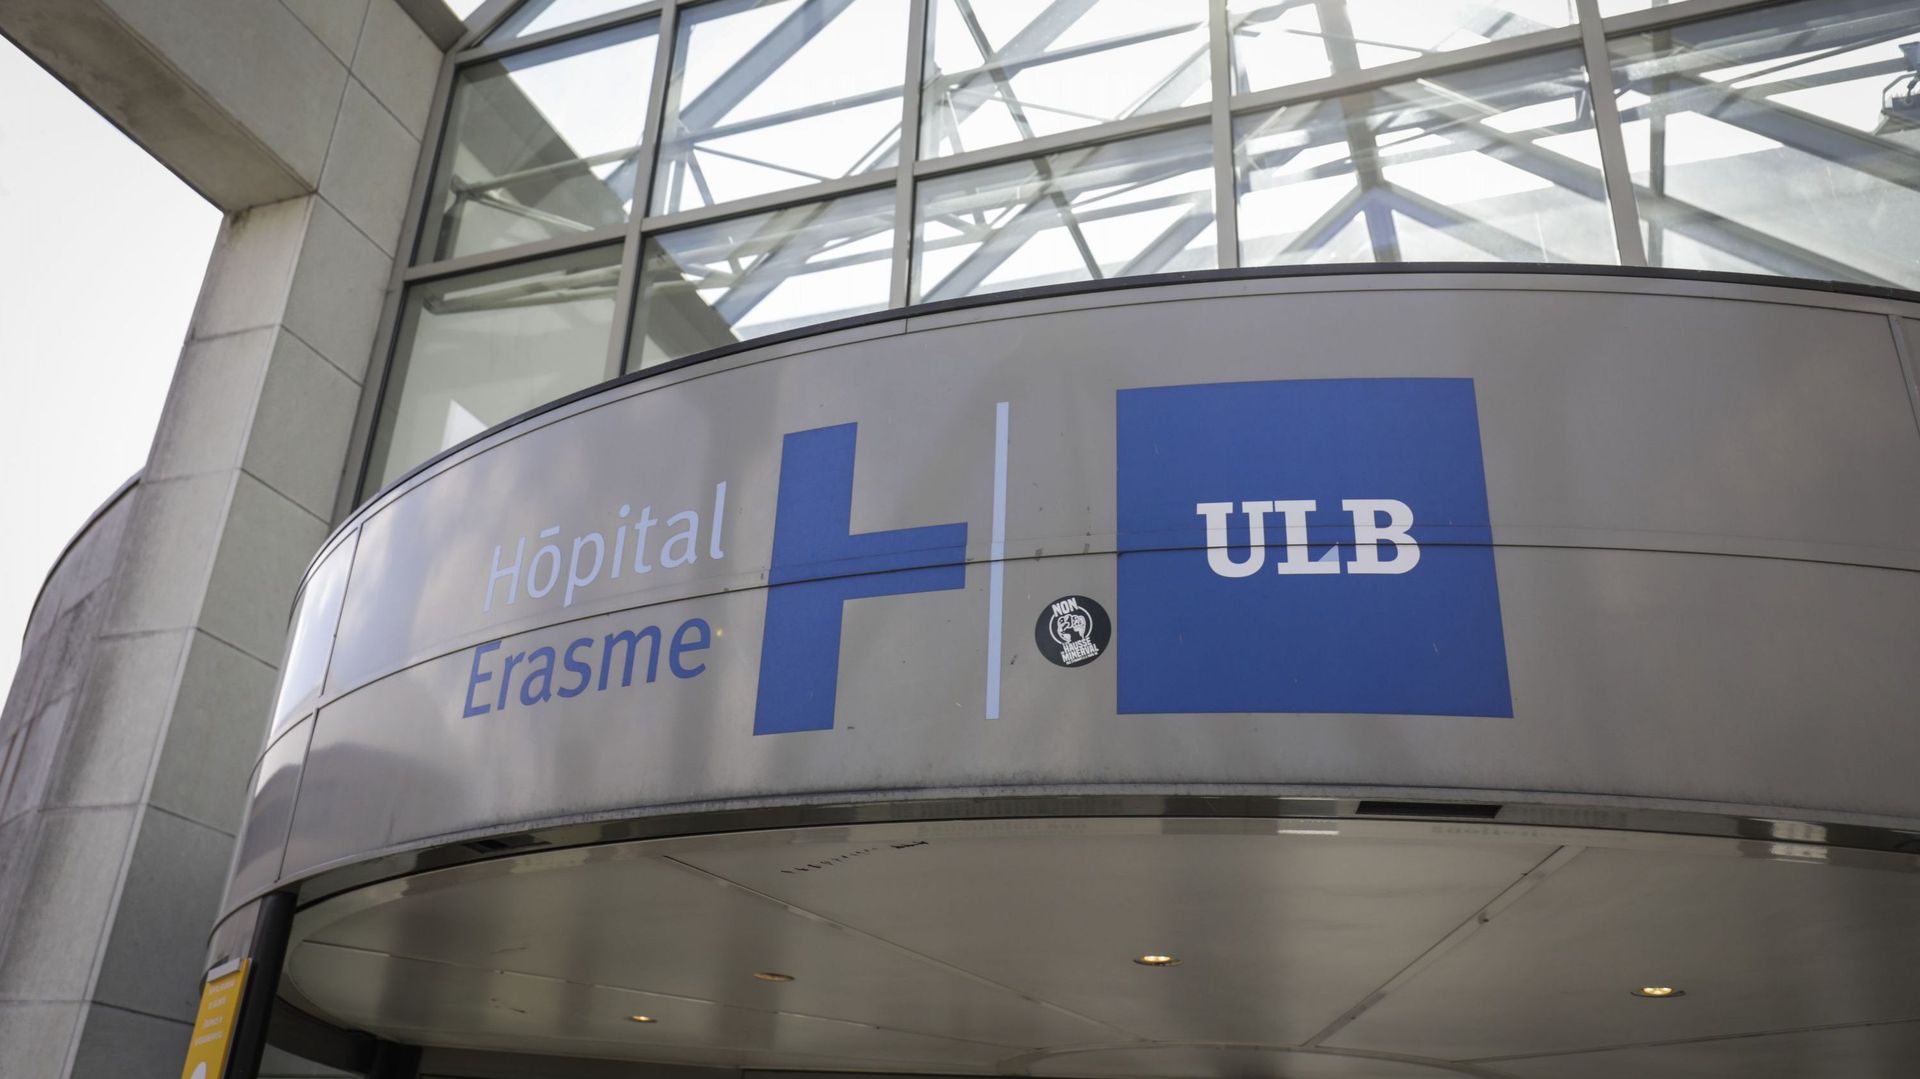 Les chercheurs de l’ULB et de l’hôpital Erasme se sont aussi mobilisés pendant la crise.